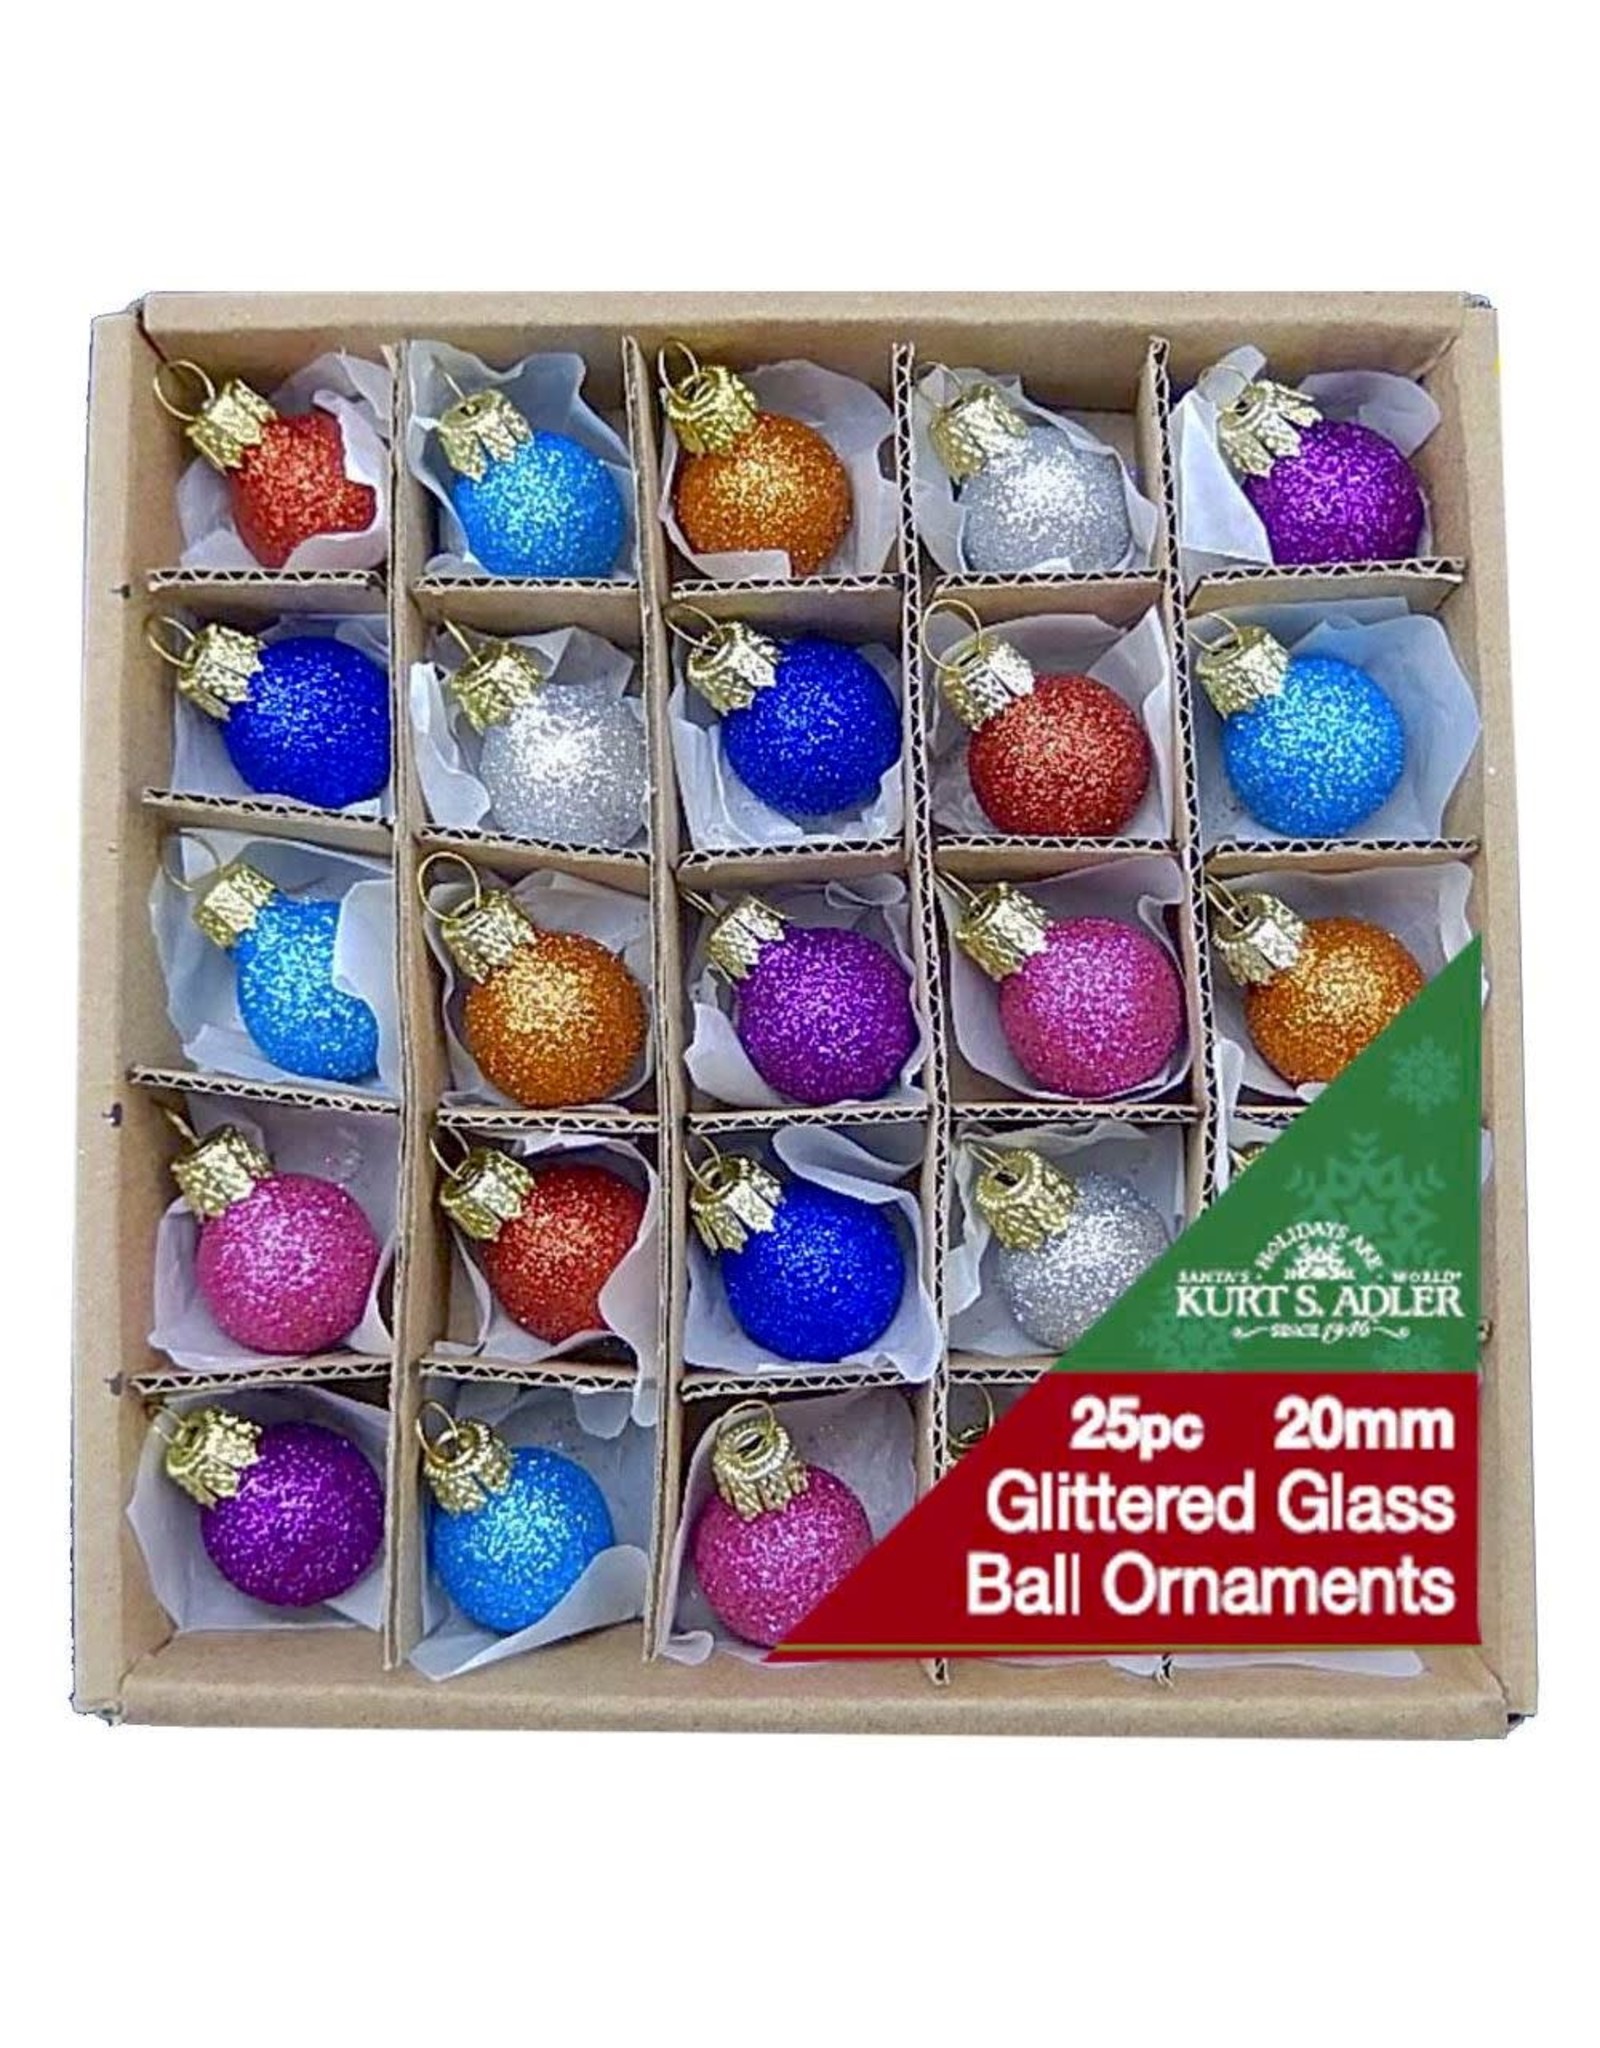 Kurt Adler 20MM Miniature Glitter Glass Ball Ornaments, 25-Piece Box Set